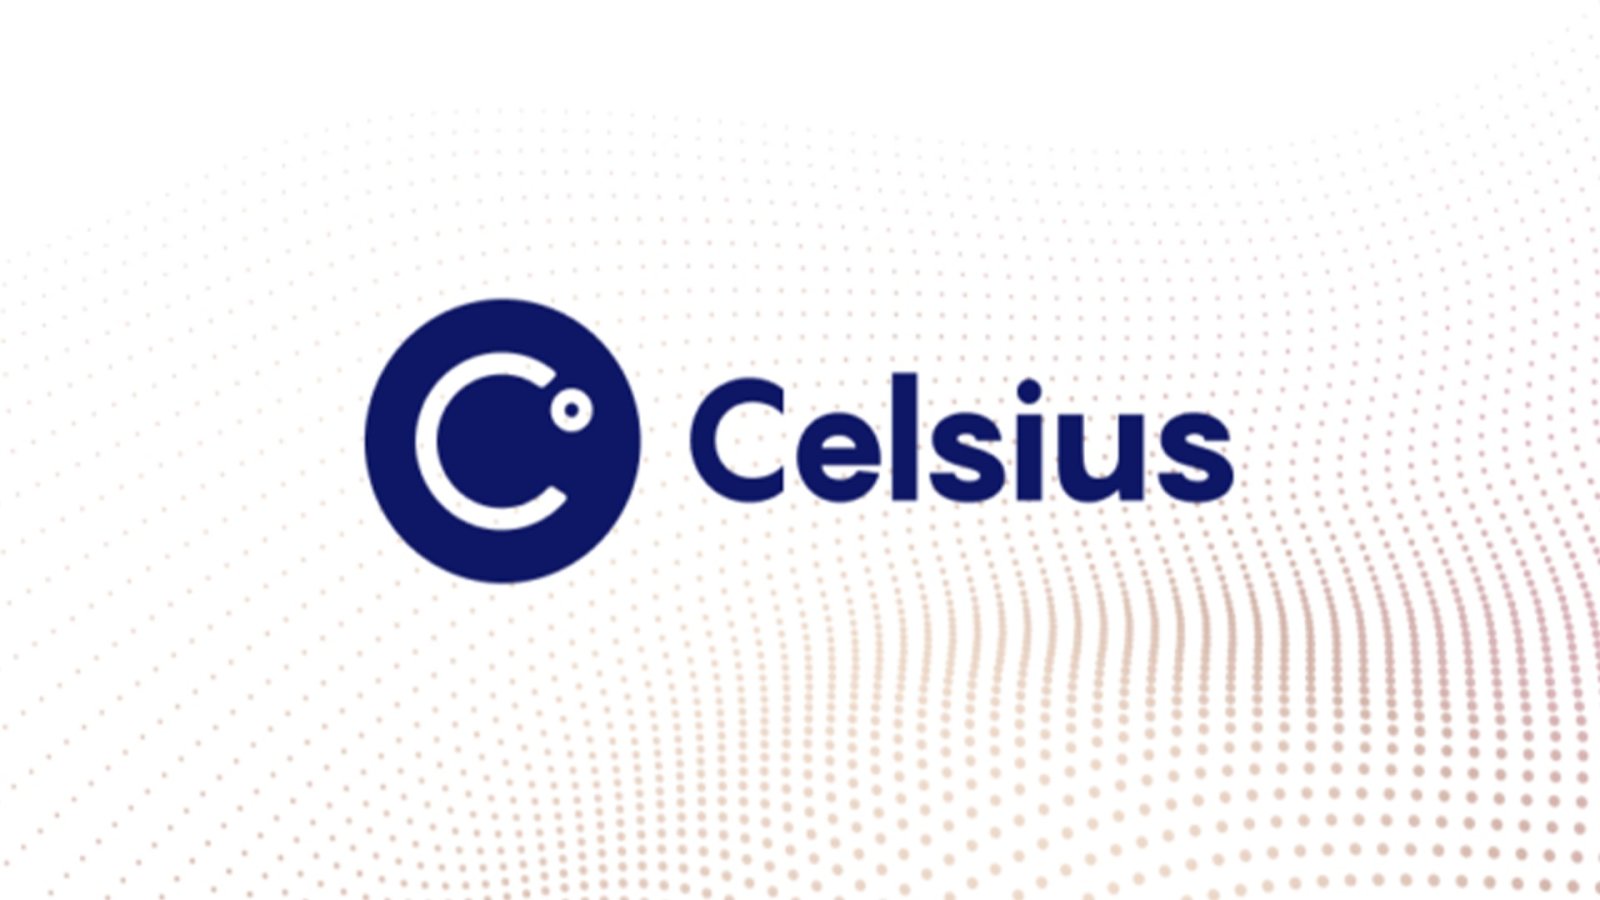 Celsius Network ได้รับอนุมัติจากศาลให้เปลี่ยนธุรกิจไปเป็นการขุดบิตคอยน์ได้